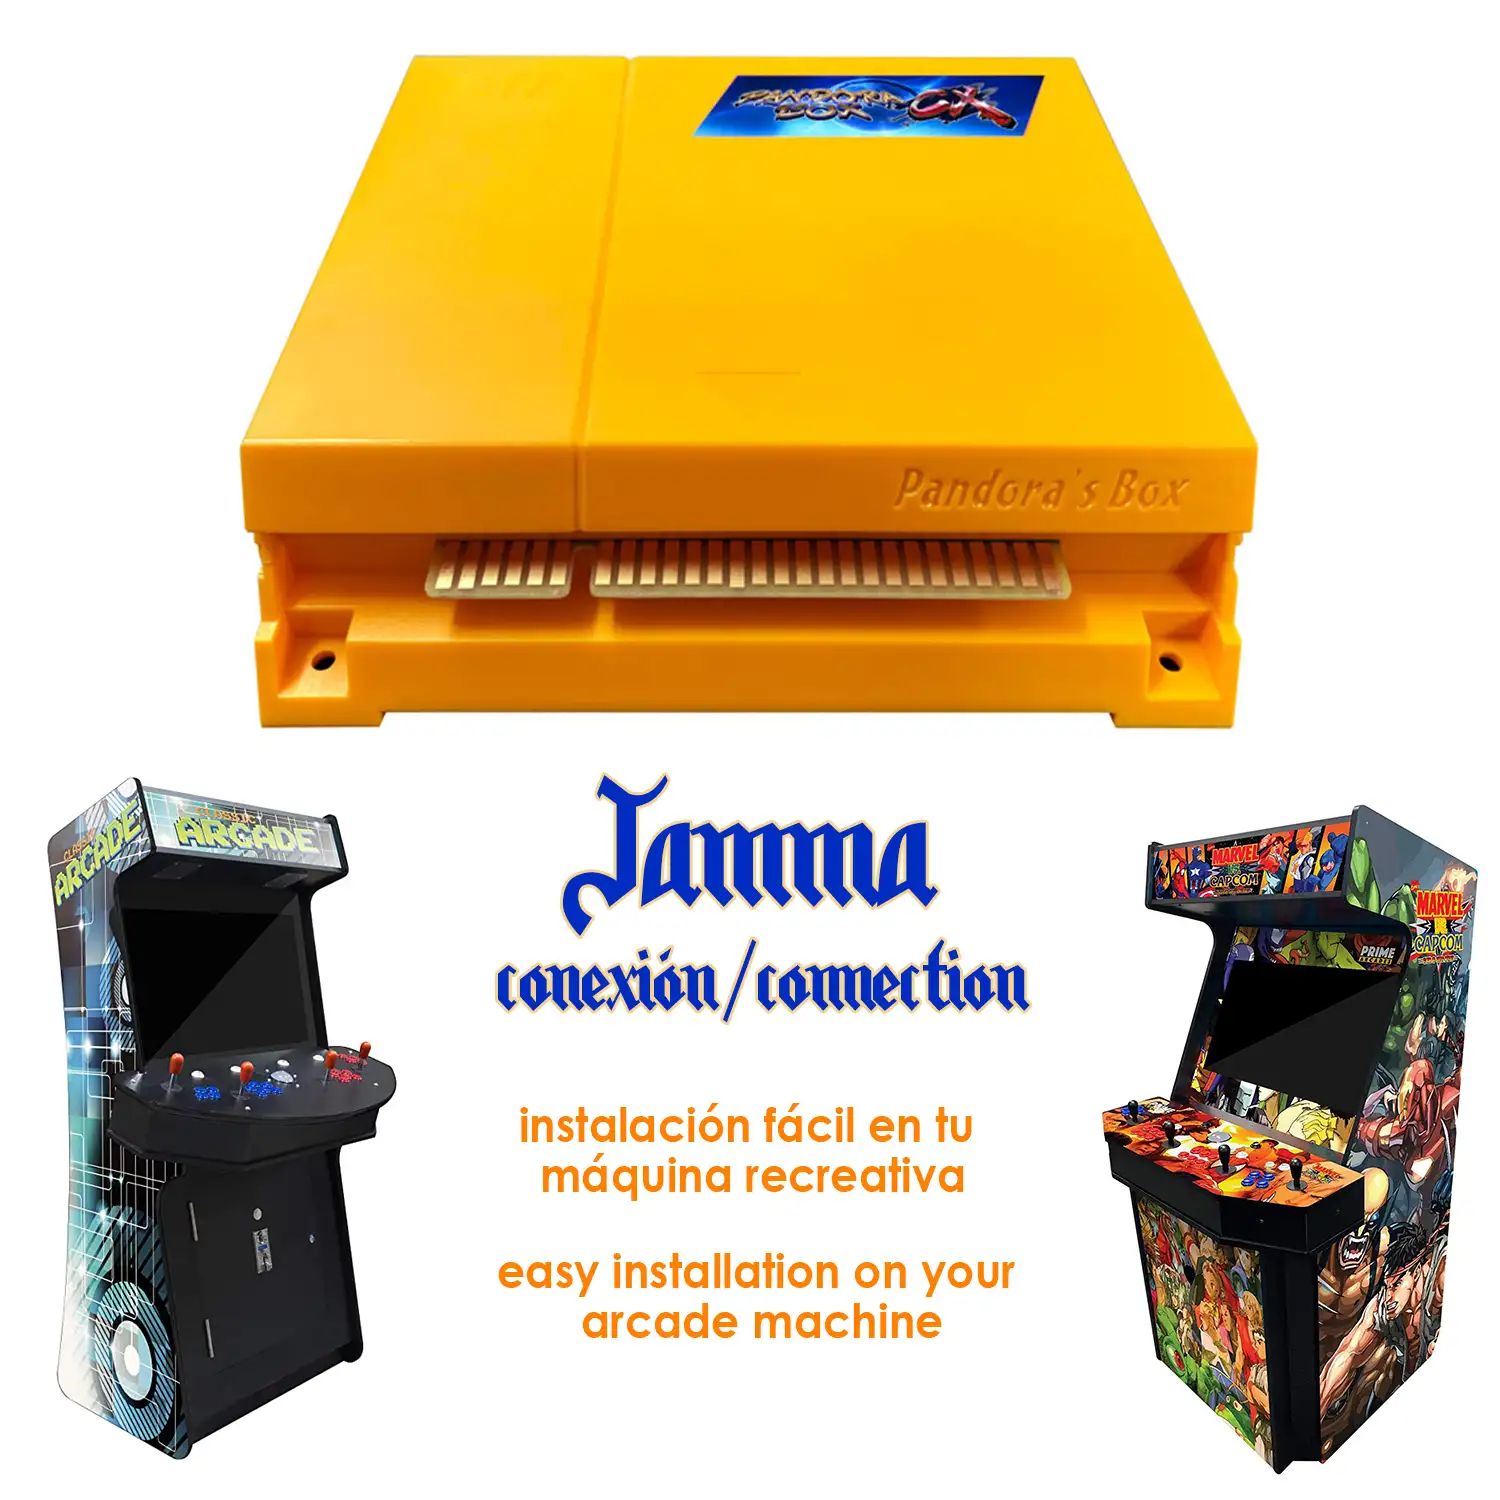 Pandoras Box CX Jamma Version. 2800 juegos, salida HDMI, JAMMA y VGA. HD720P. Para máquinas recreativas con conexión Jamma.